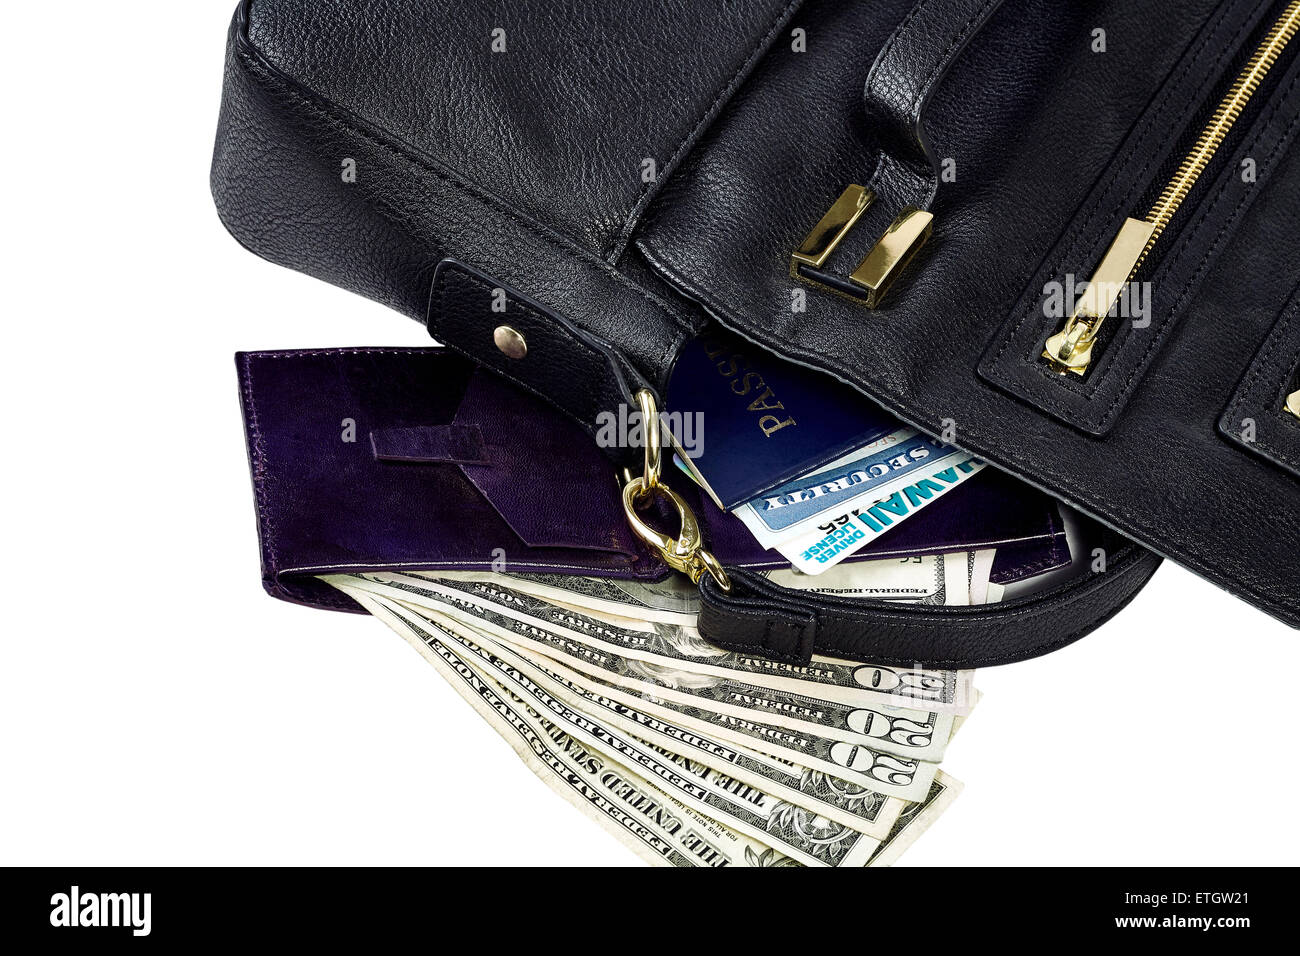 Inhalt der Handtasche verschüttet aufschlussreiche Pass, AHV-Ausweis, Führerschein, Brieftasche, US-Währung isoliert auf weiss Stockfoto